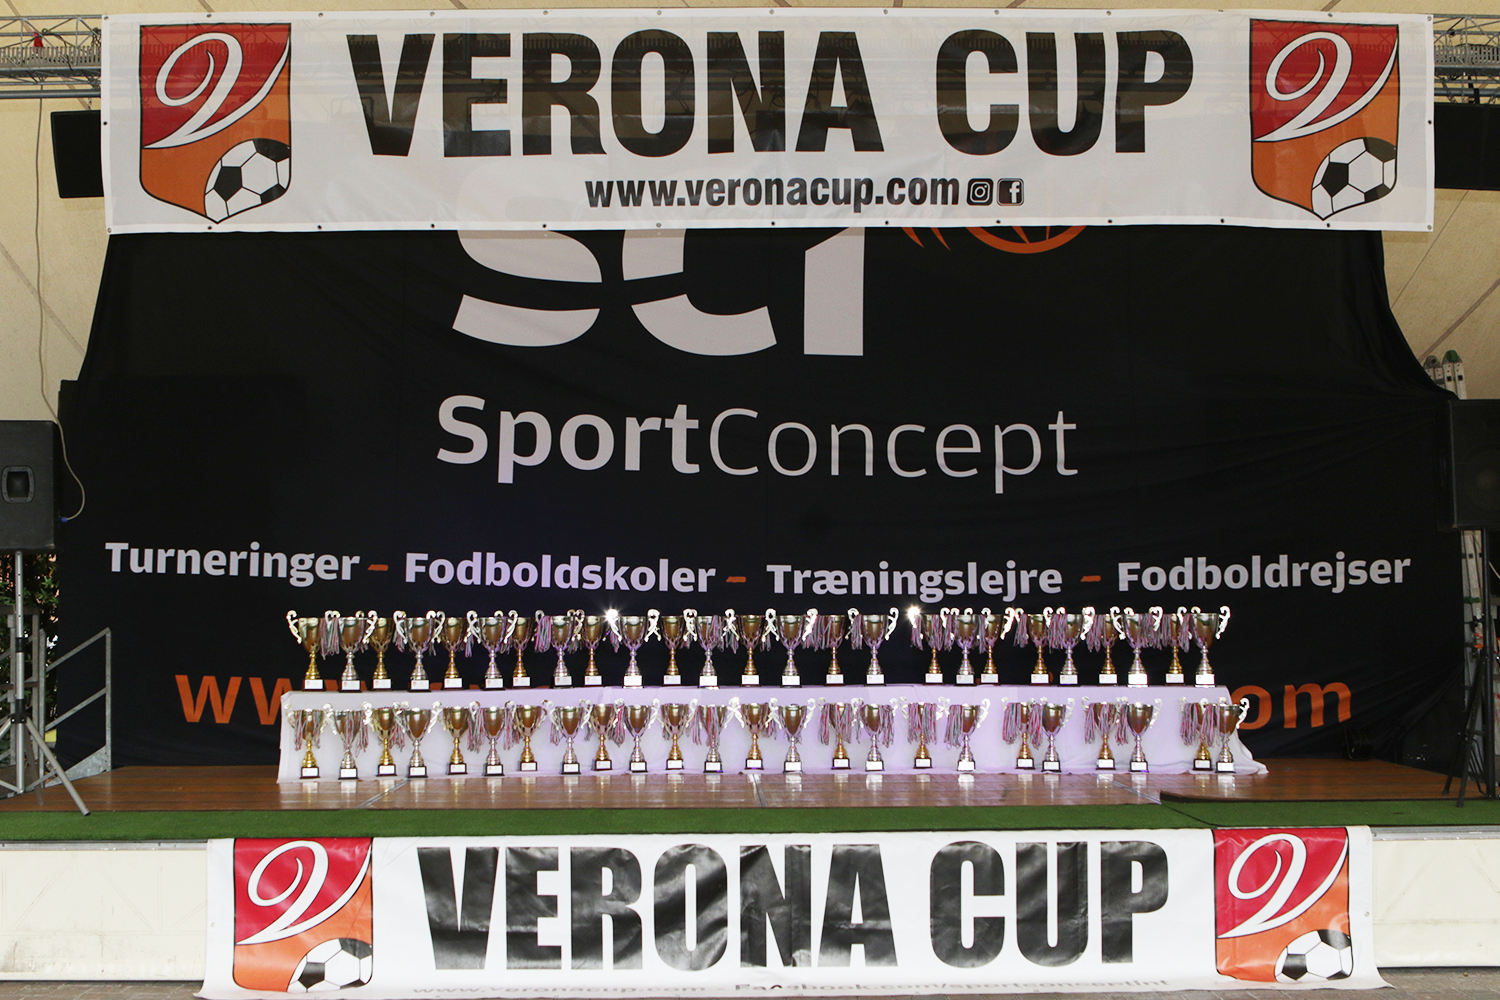 2400 til Verona Cup i efterårsferien